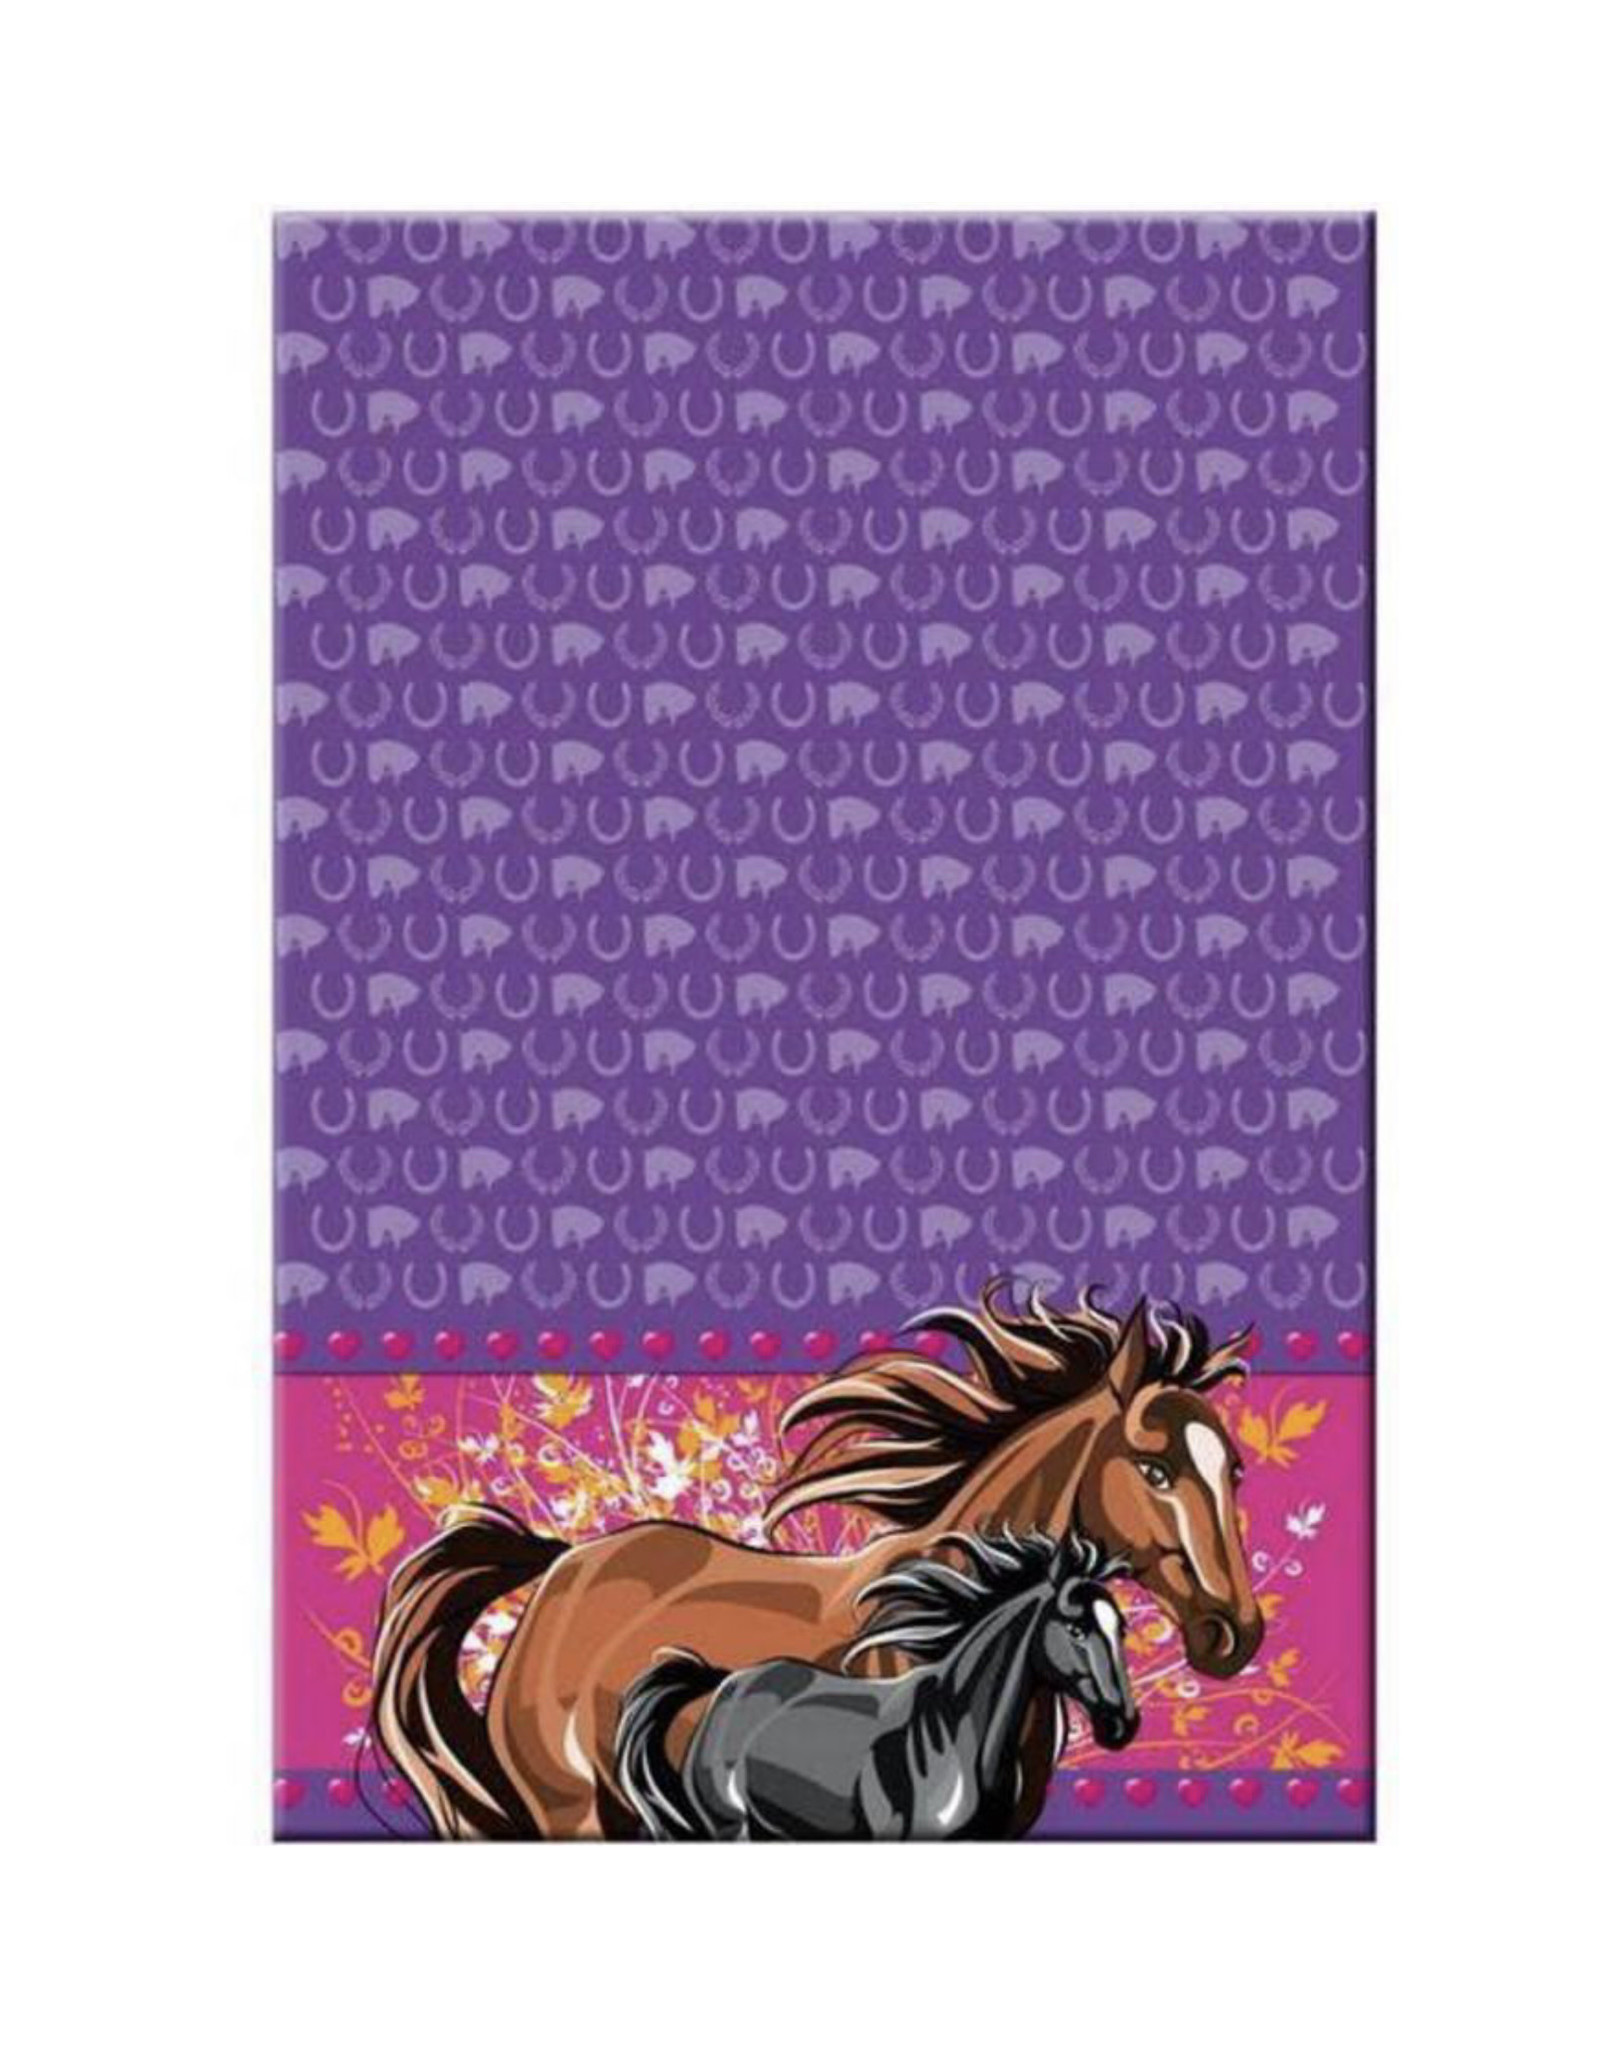 Paarden tafelkleed 130x180 cm